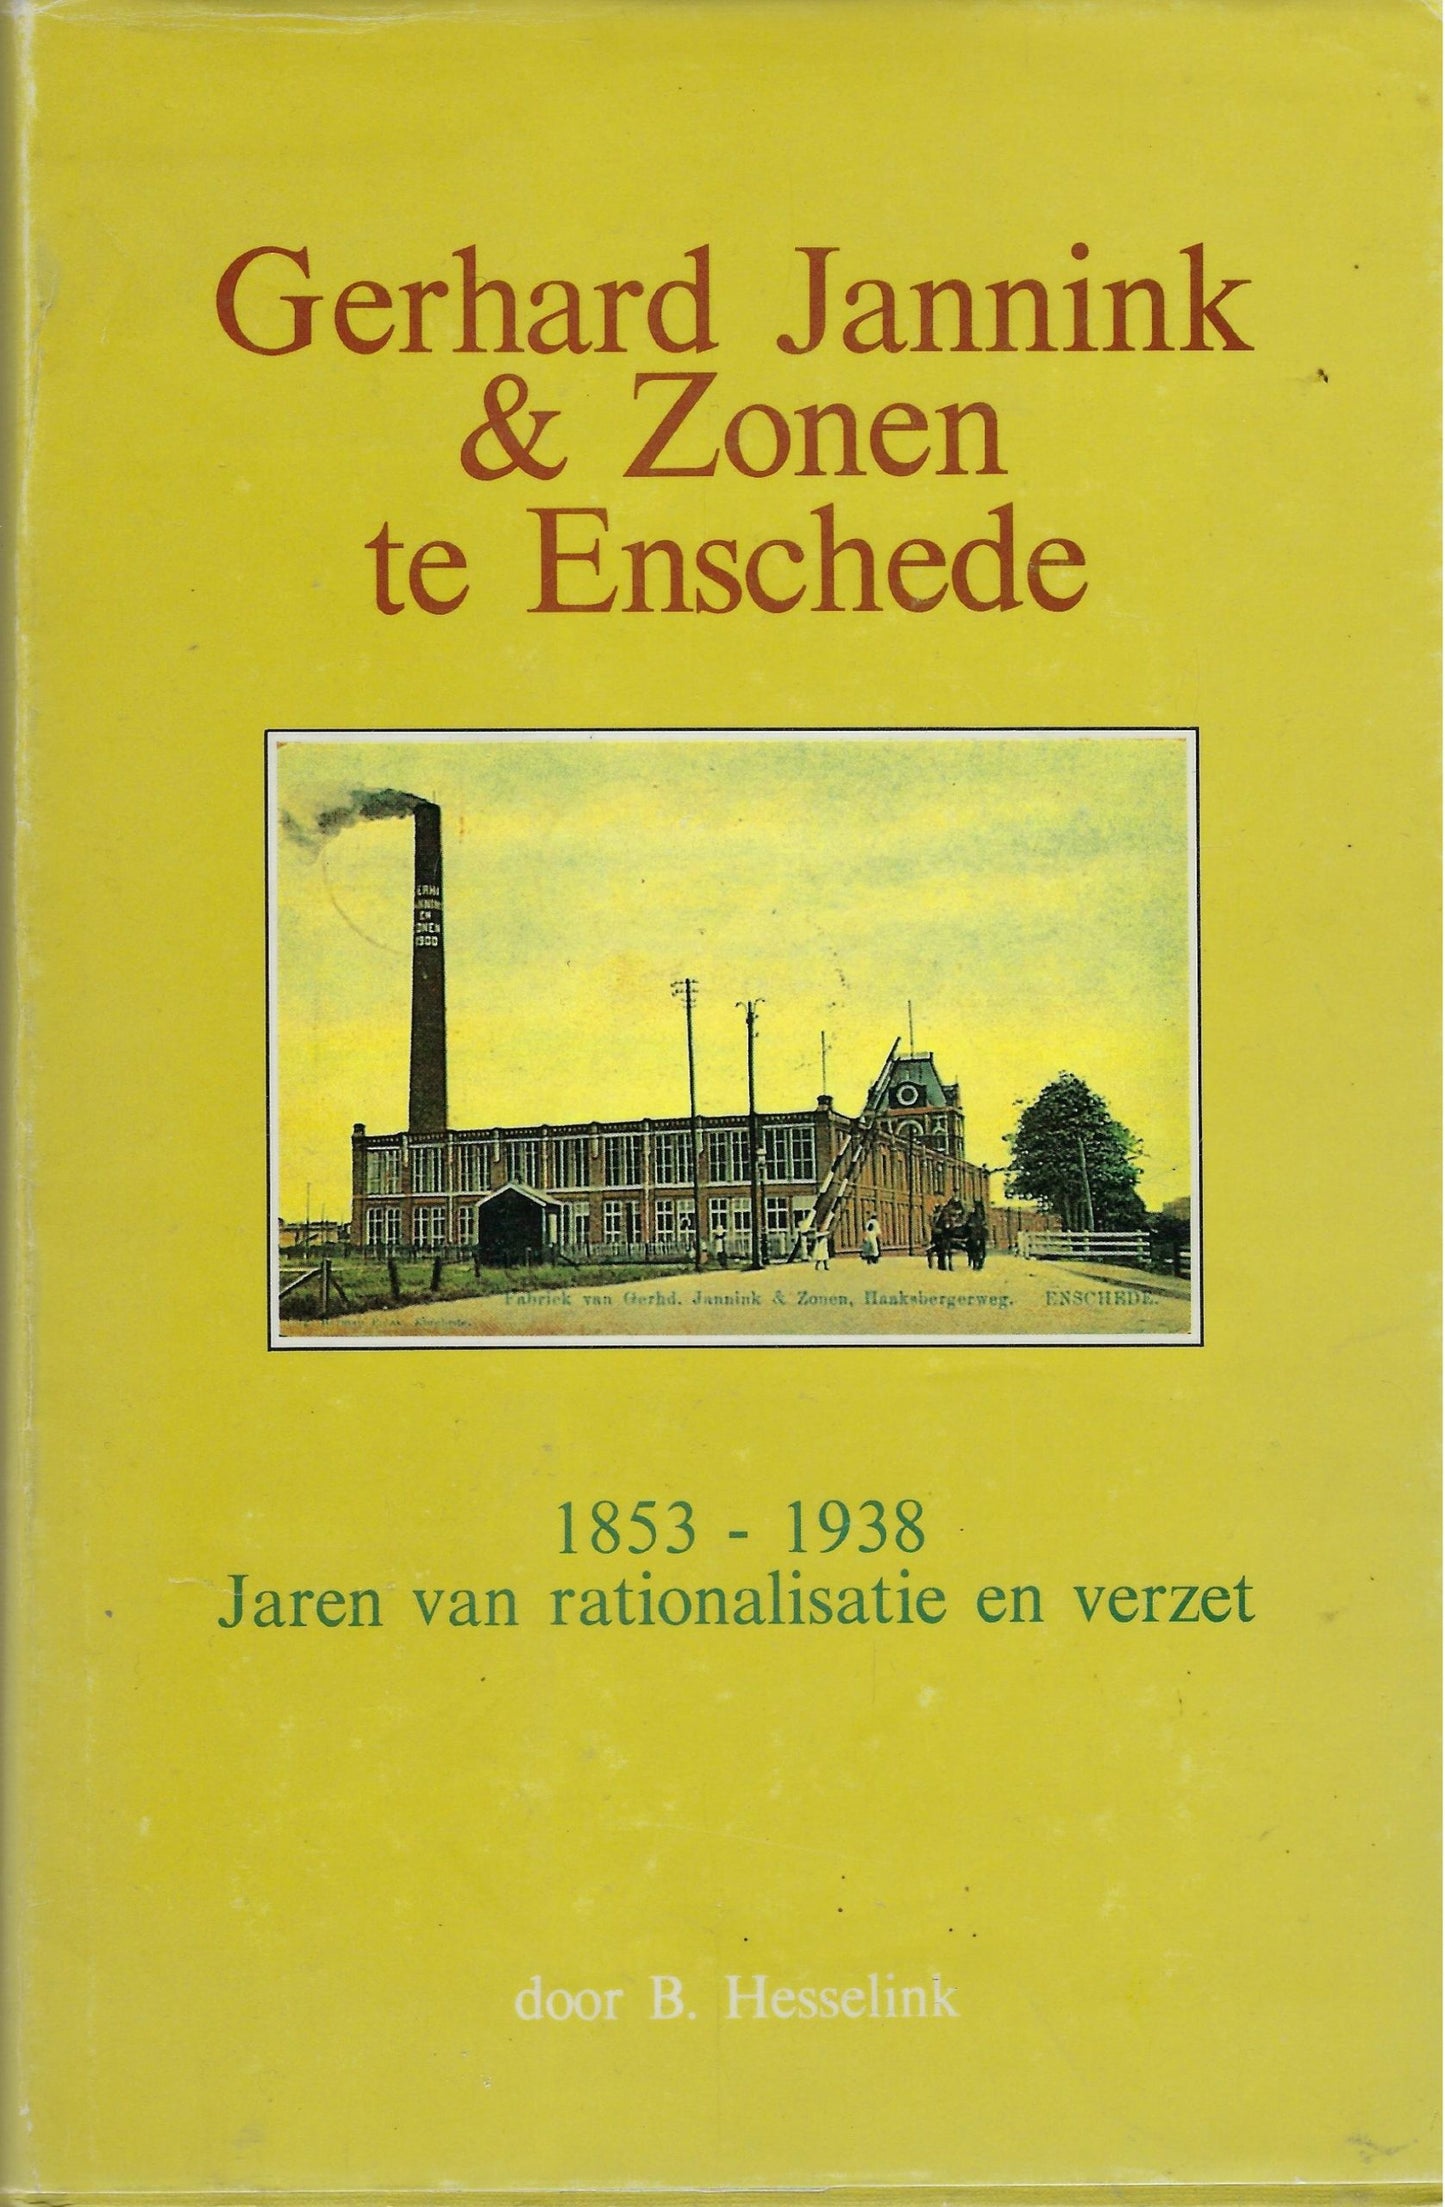 Gerhard Jannink en zonen te Enschede